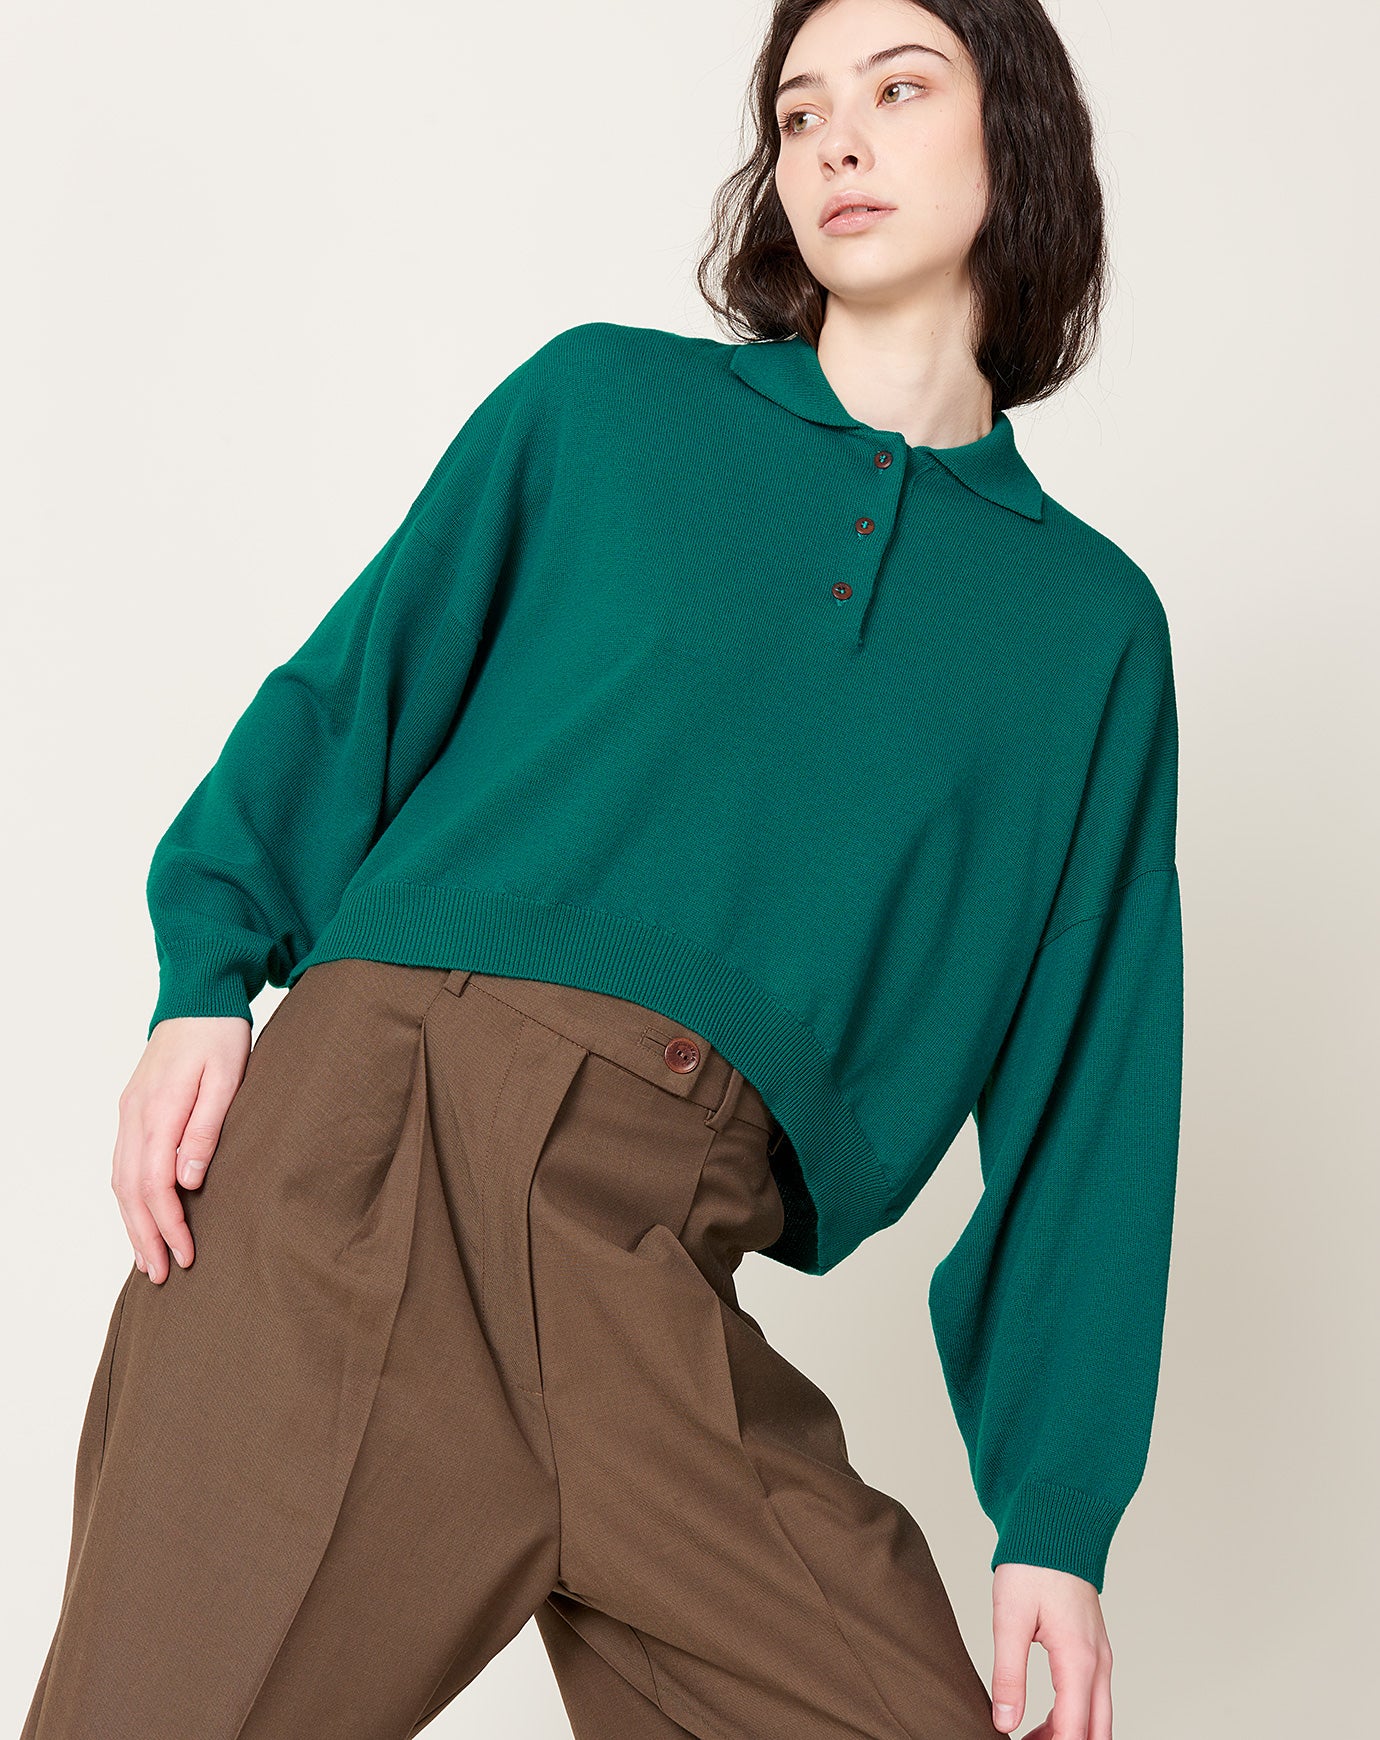 Cordera Merino Wool Polo Sweater in Teal Green